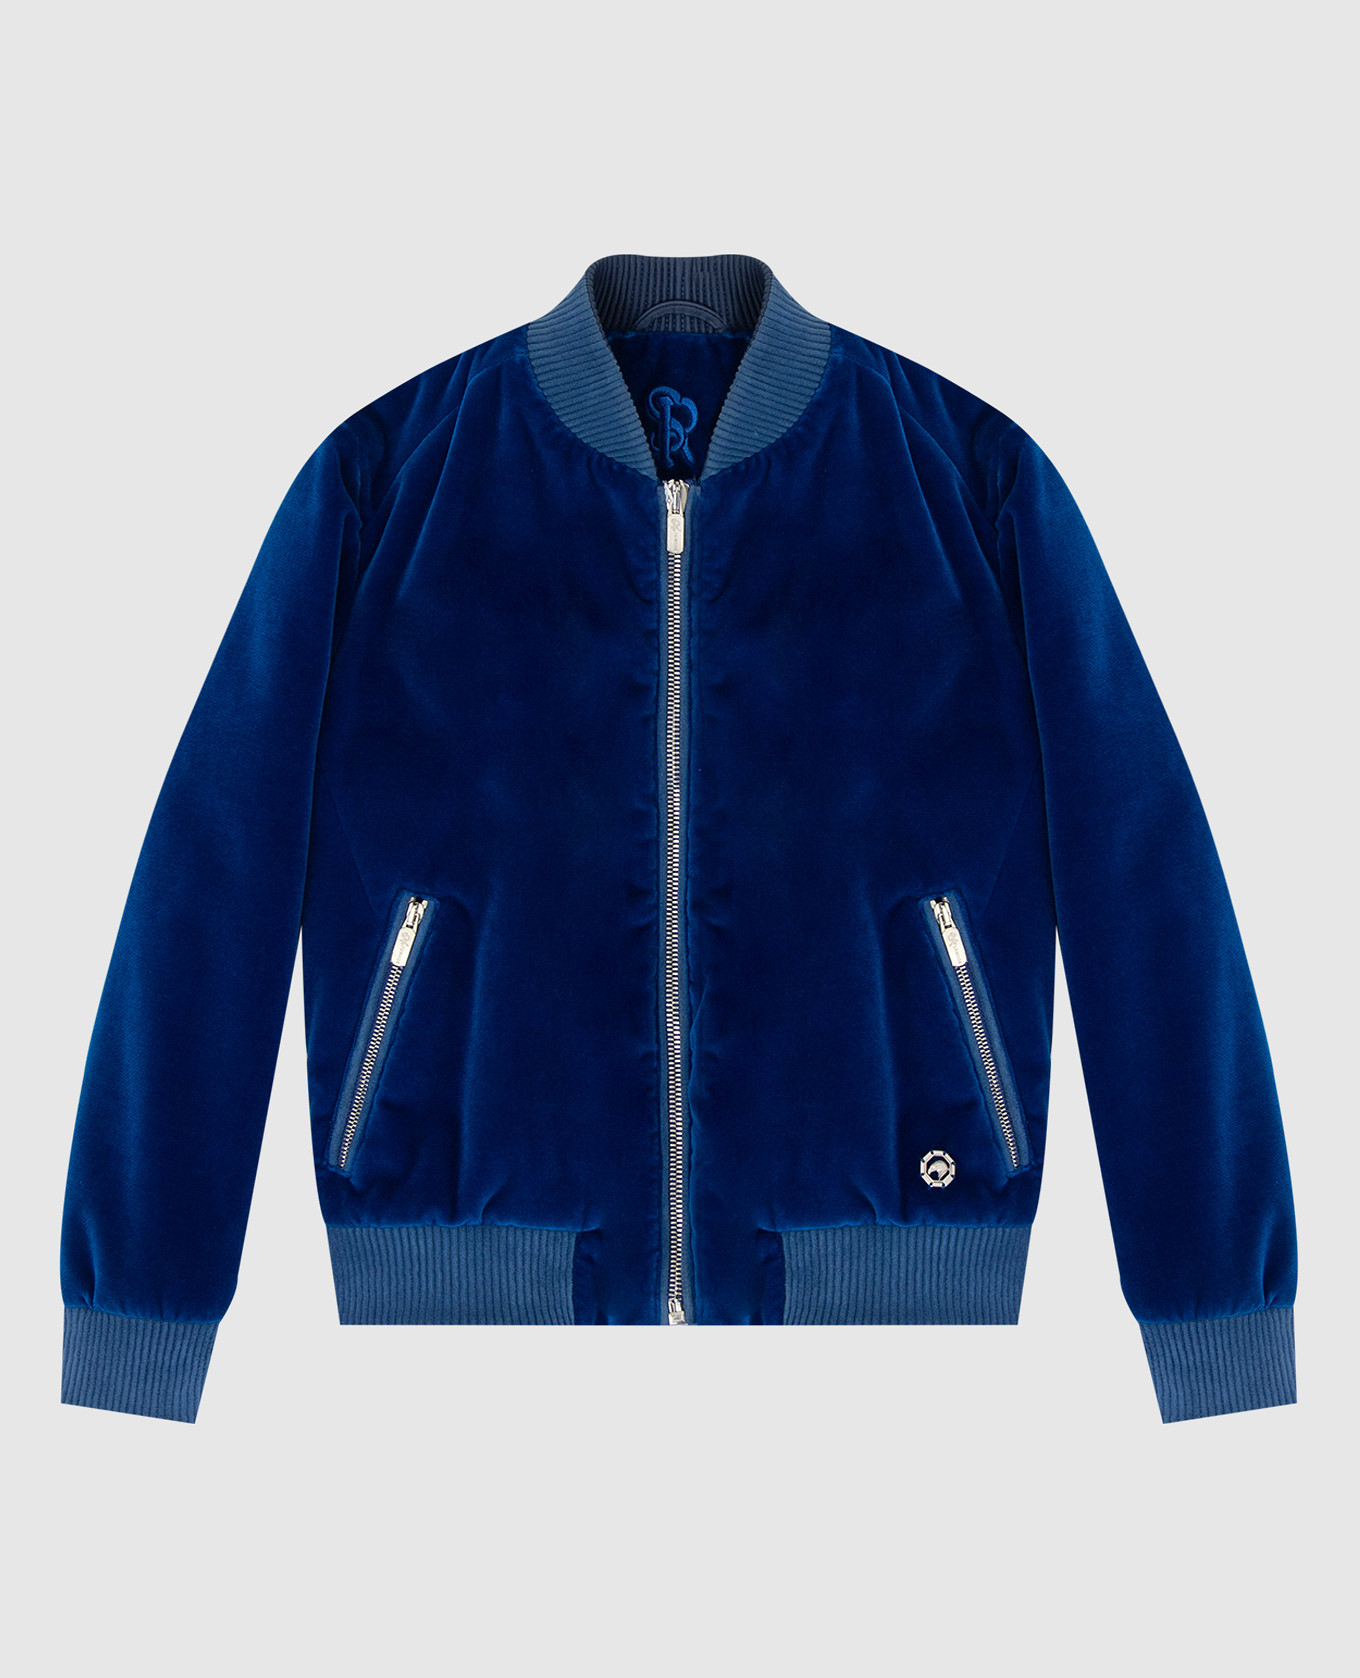 Children's blue velor jacket with emblem